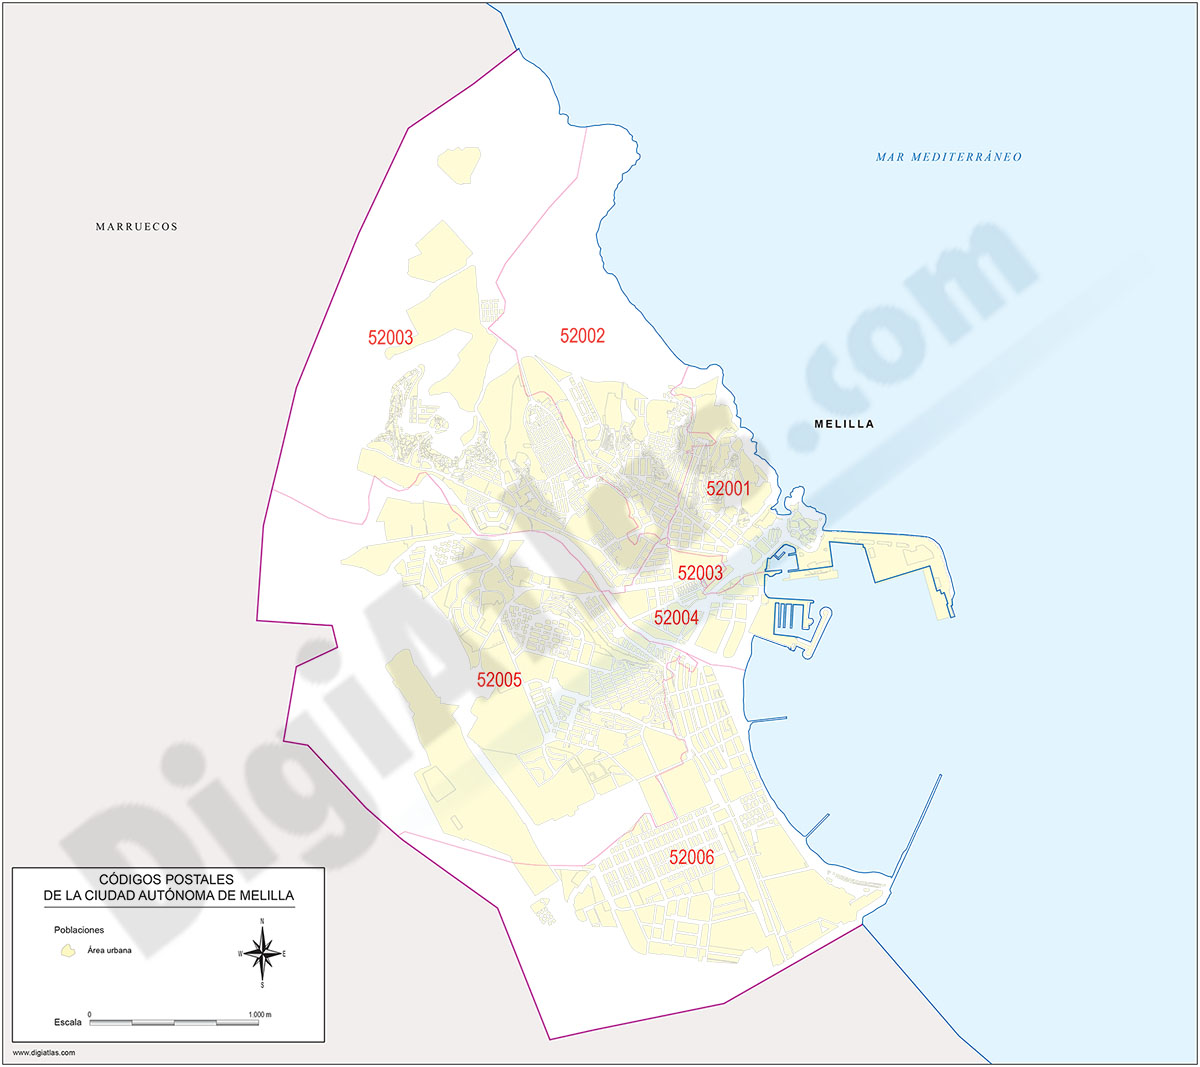 Melilla - mapa de la ciudad autónoma con los códigos postales